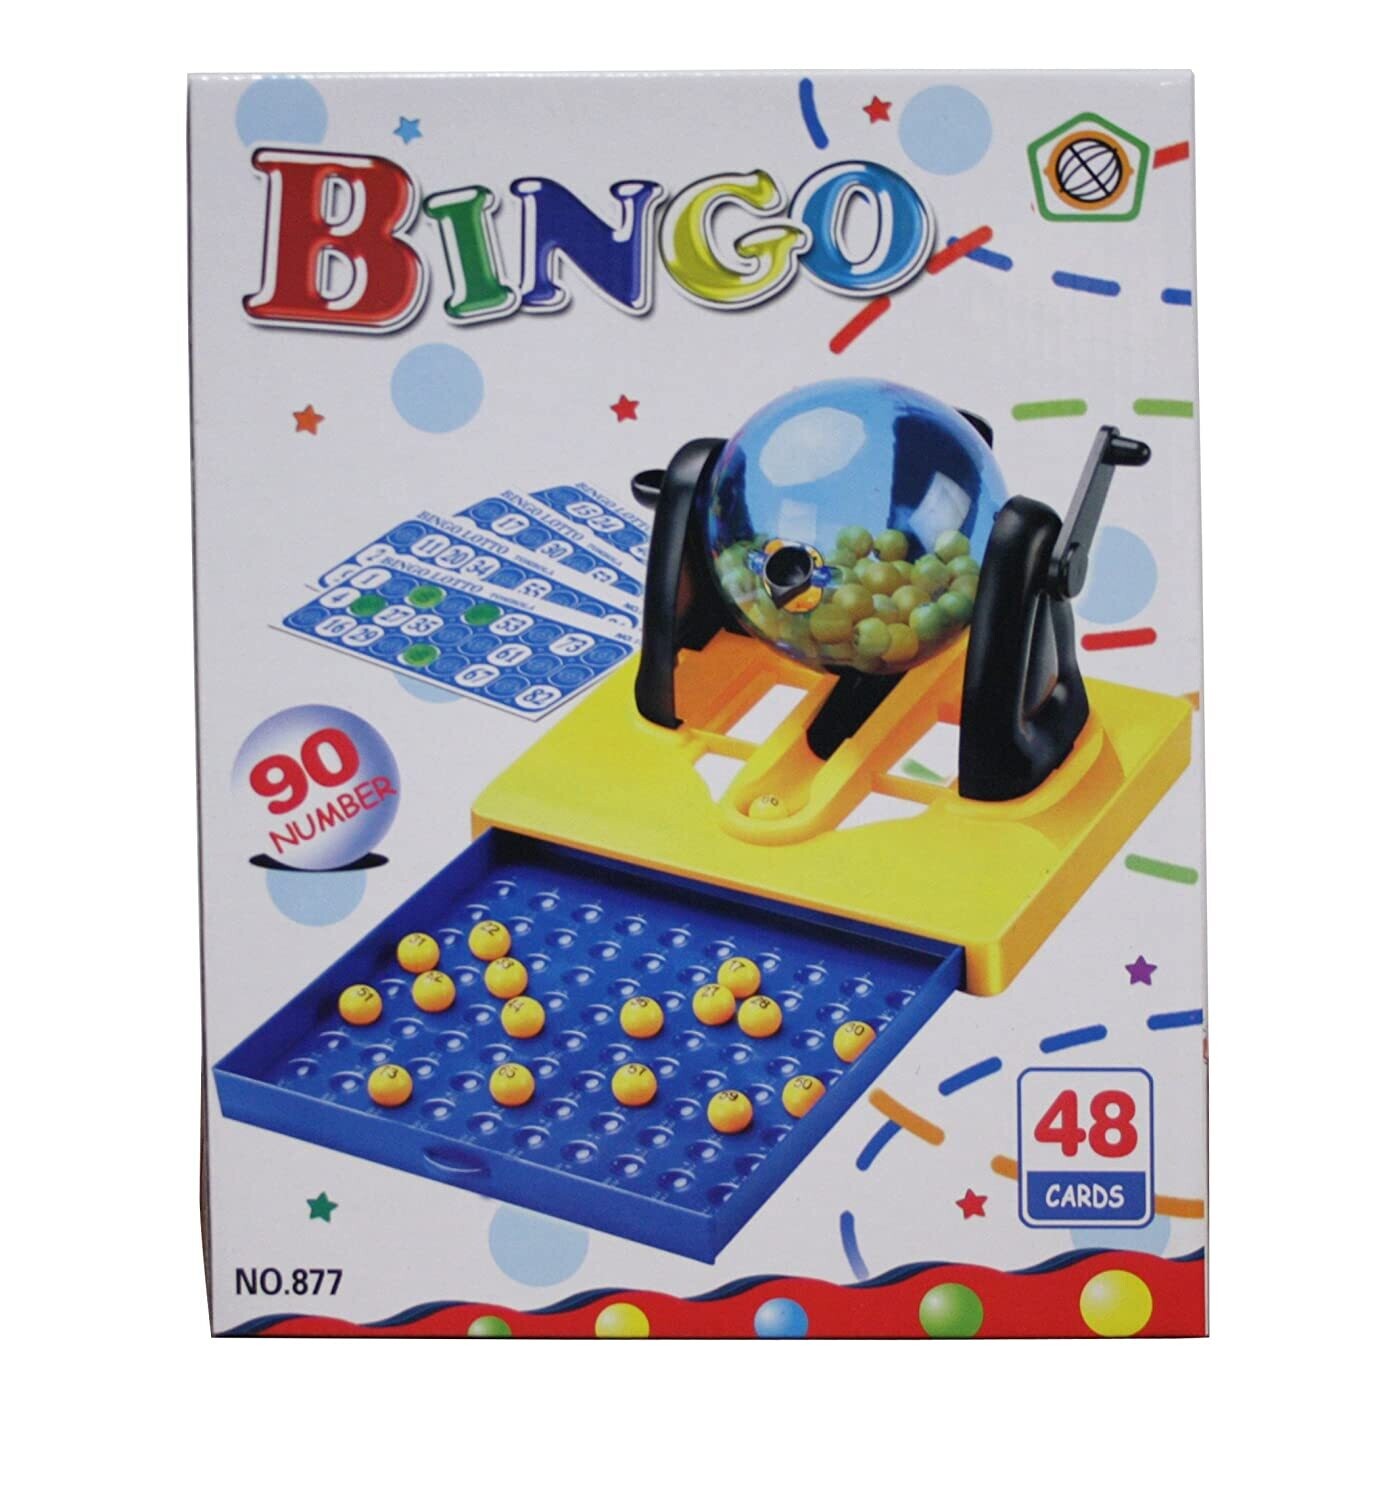 RSC BINGO GAME LARGE NO-877 C15-159